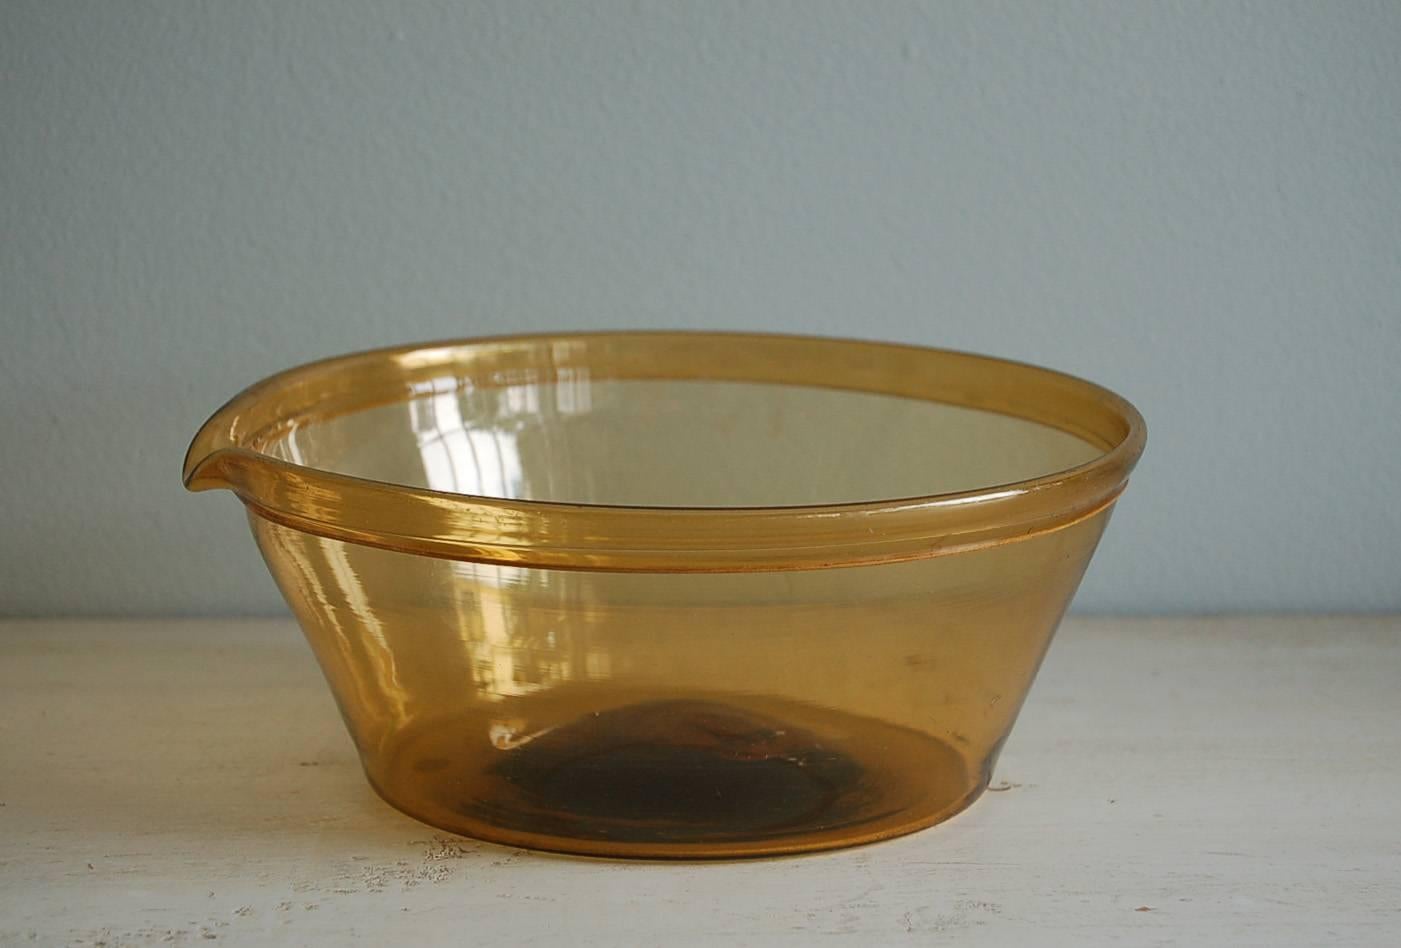 Bol à lait suédois en verre soufflé à la main de style gustavien jaune du 18e siècle avec bec verseur, vers 1780, origine : Suède.